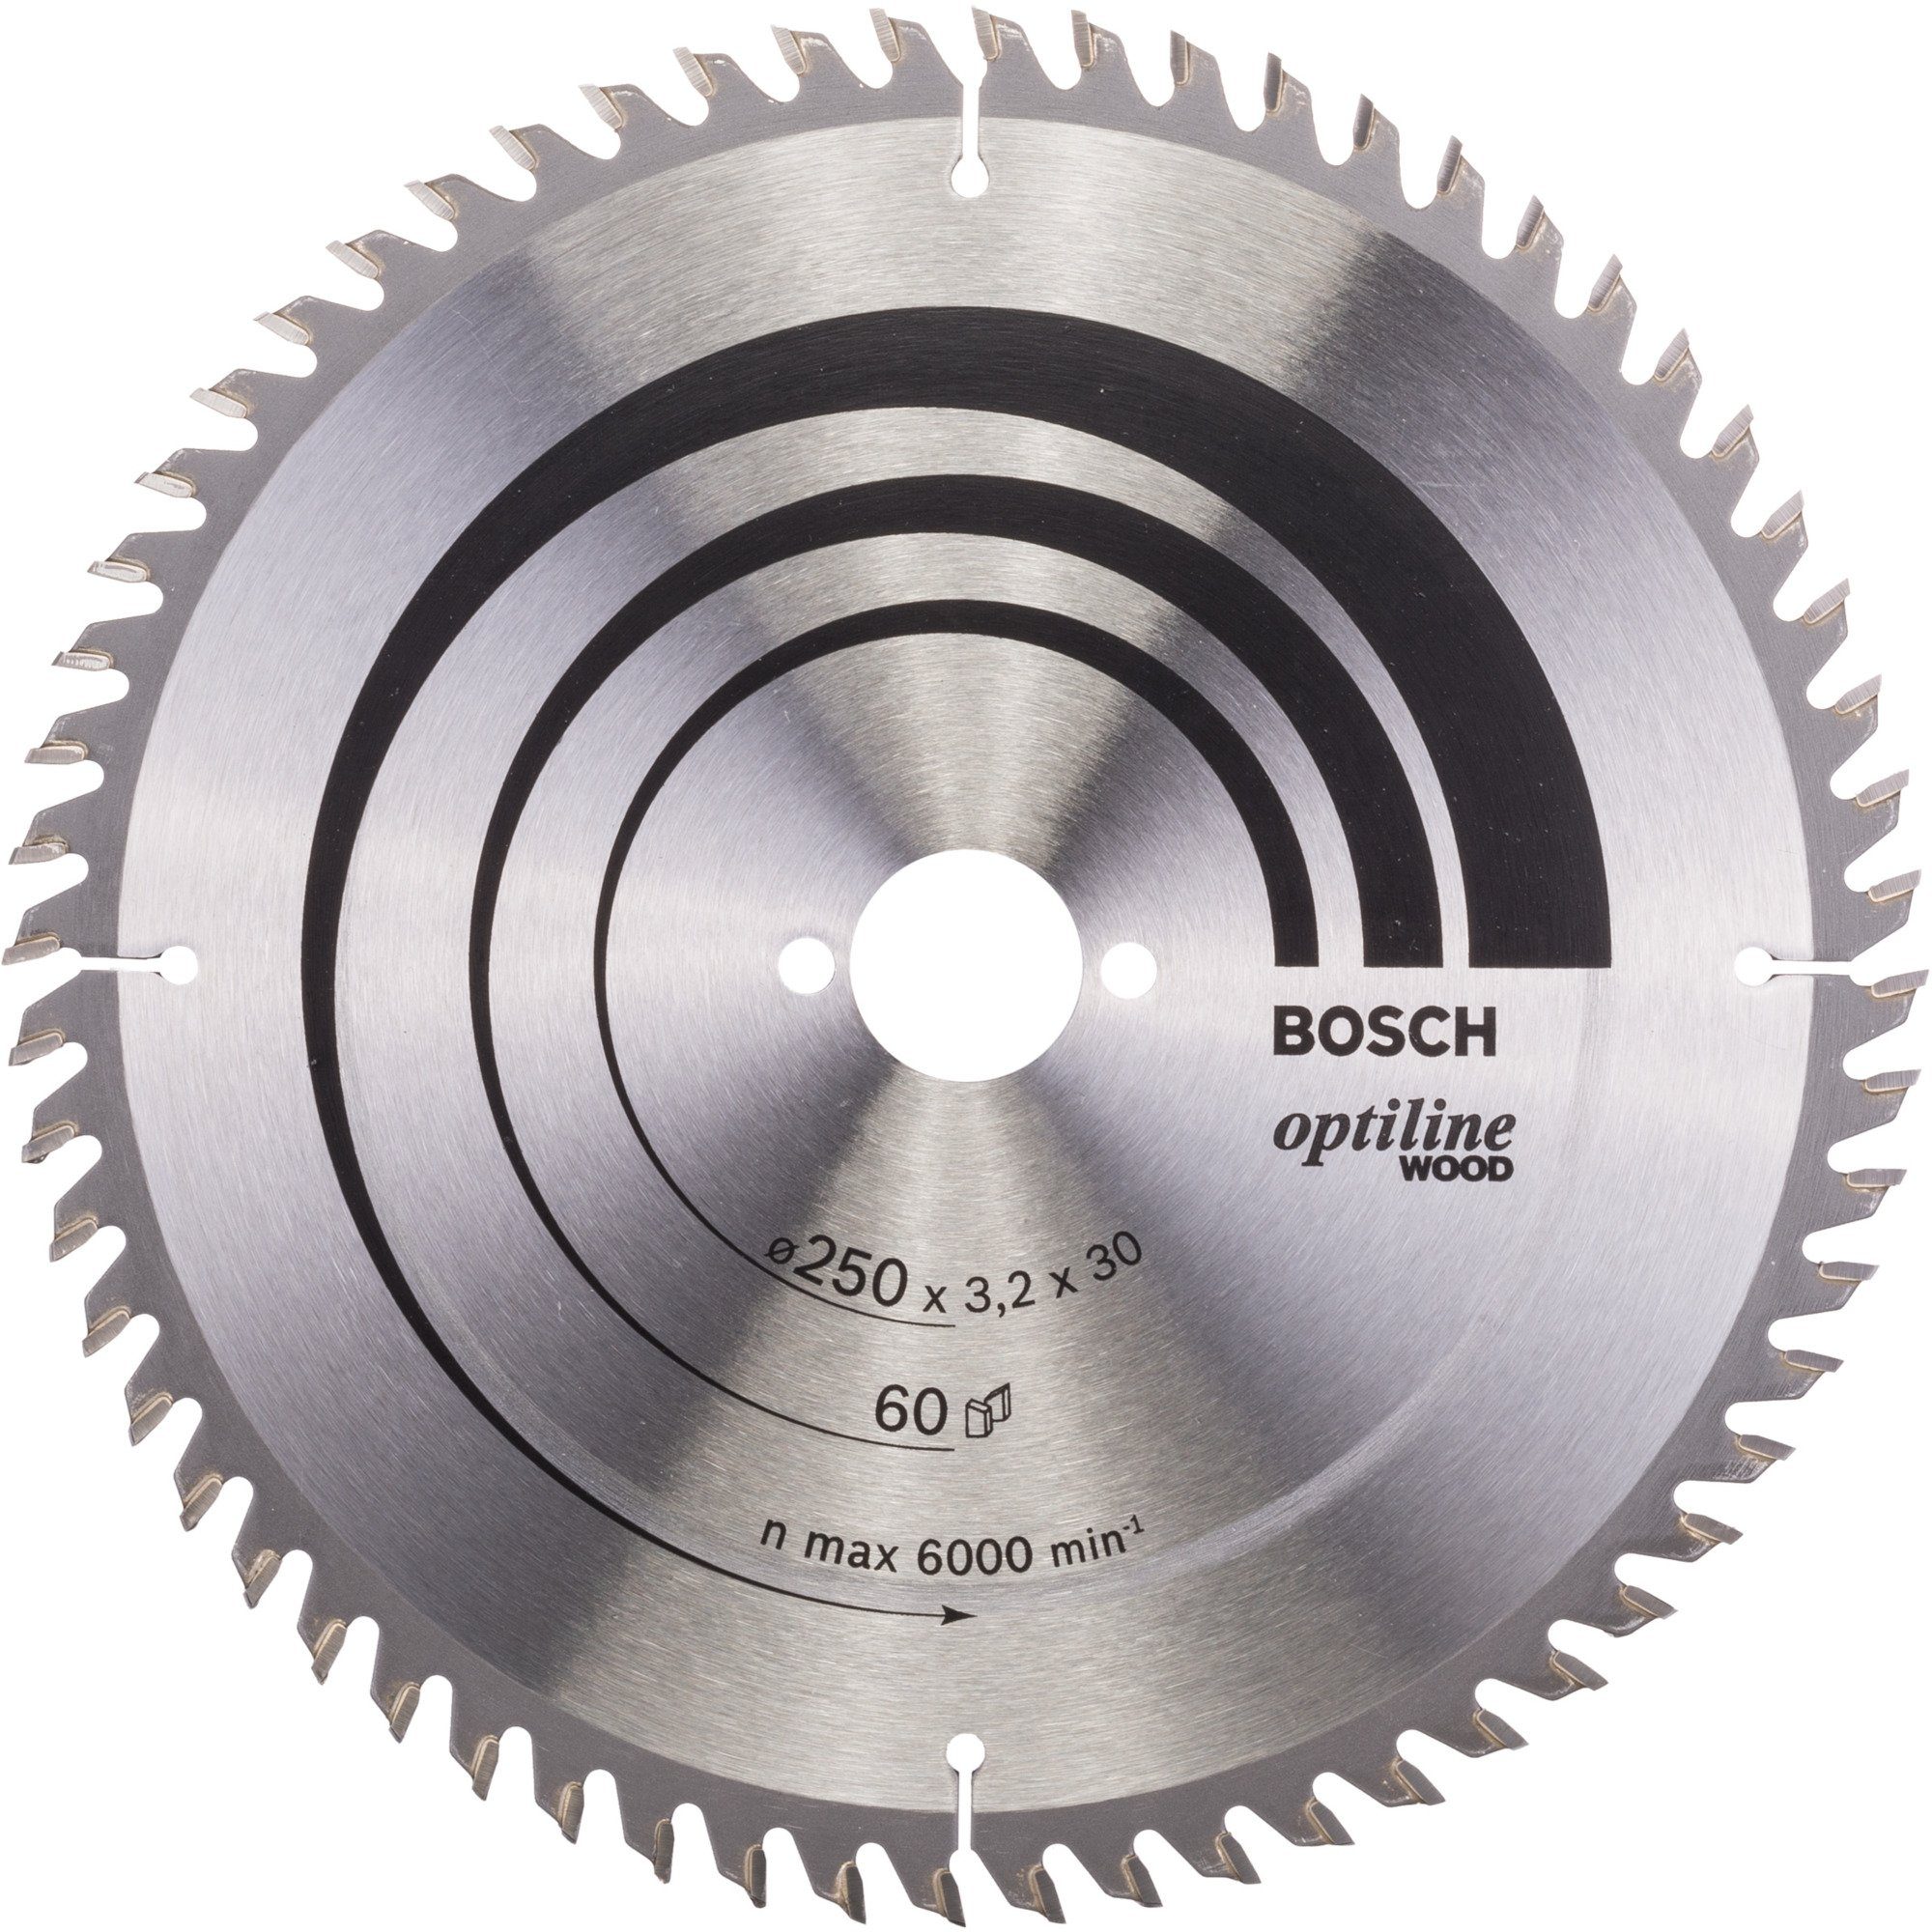 BOSCH Kreissägeblatt mm Optiline Ø, Wood, Professional Ø 250 Sägeblatt Maße: Bosch